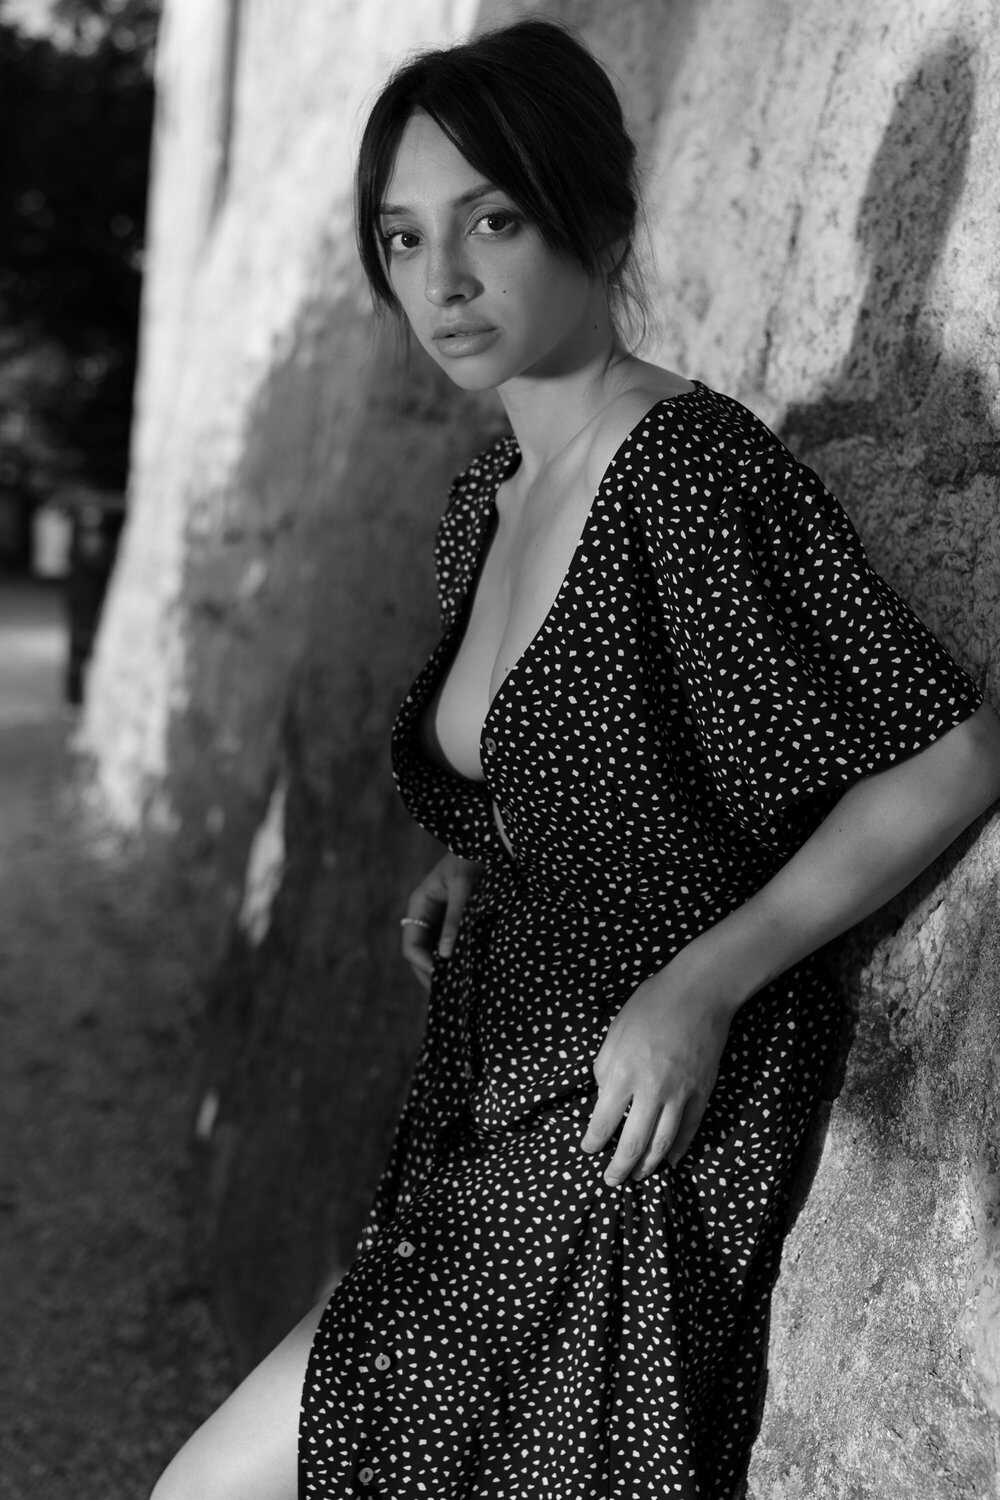 Topless φωτγογραφίες της νεαρής μοντέλου Olivia Linz